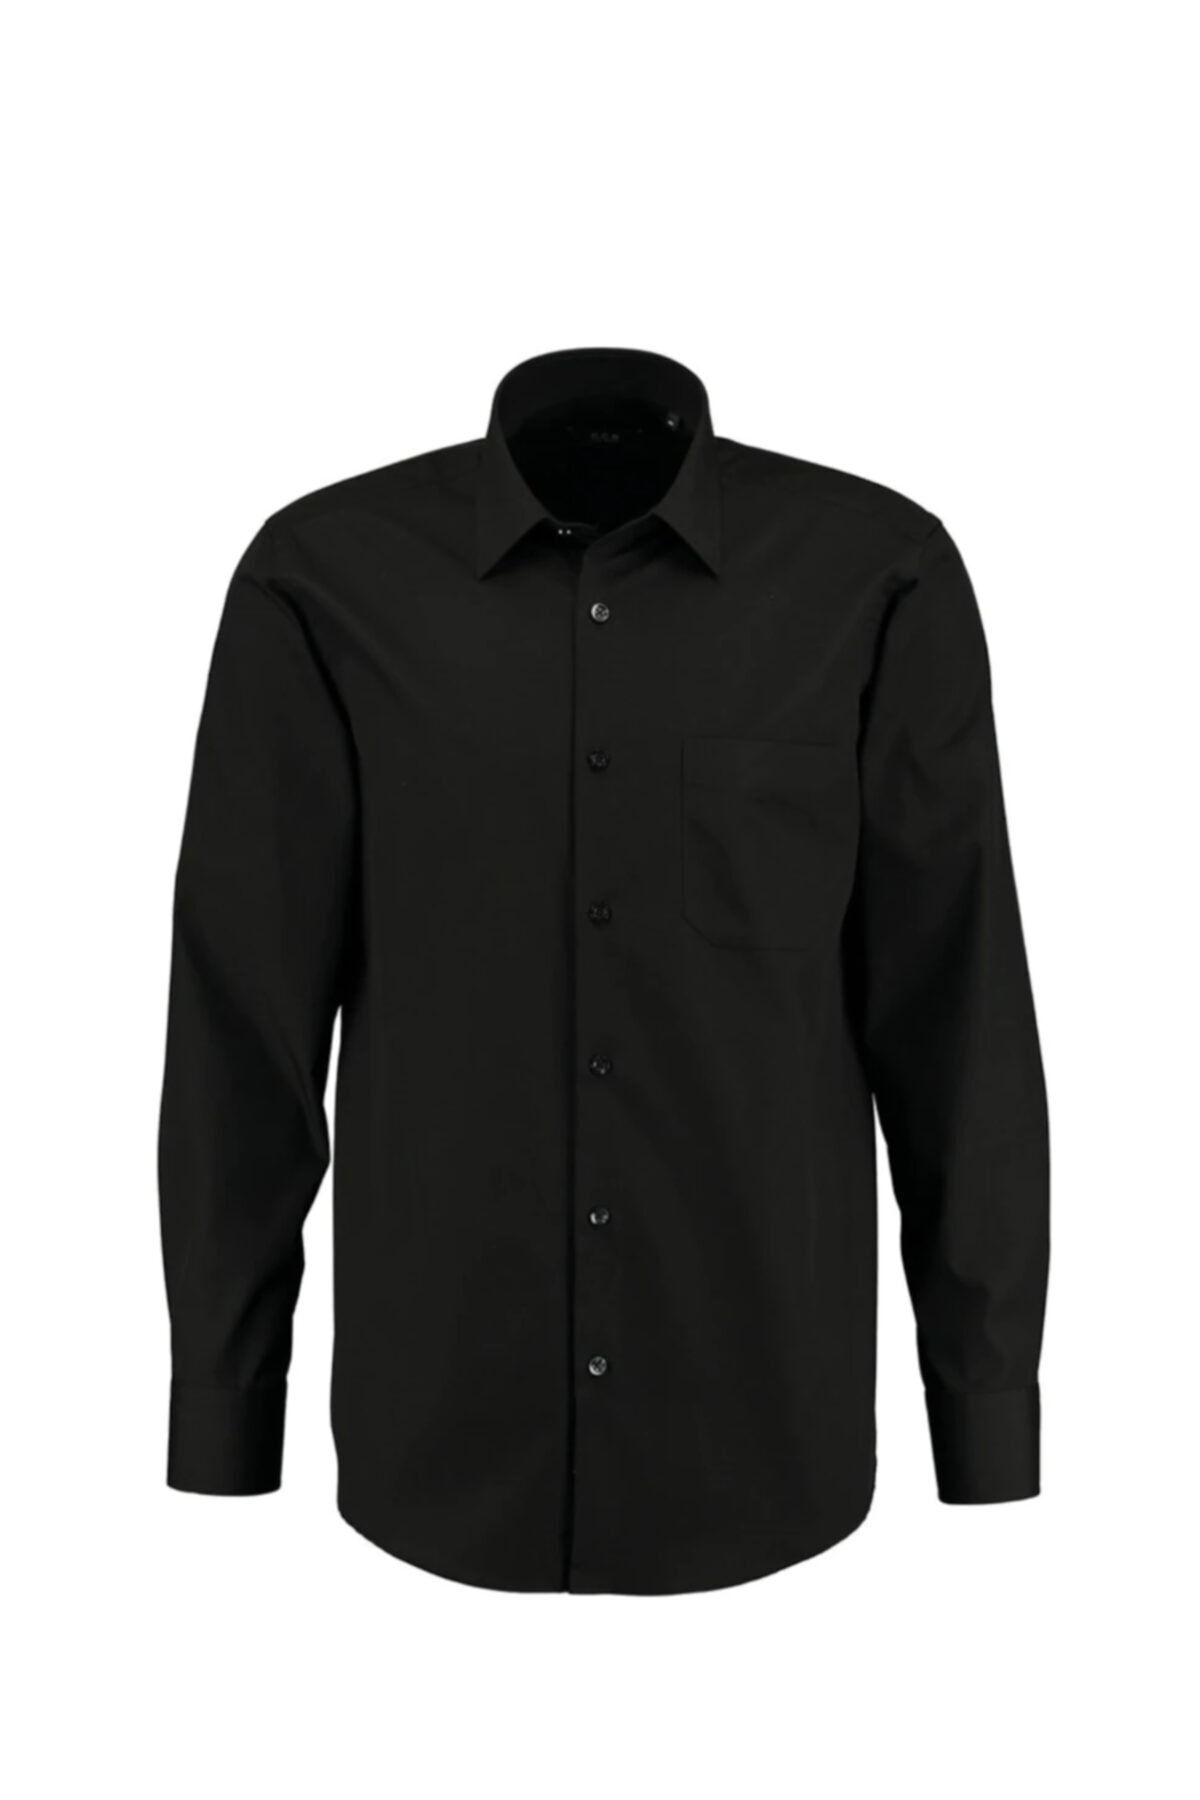 Genel Markalar Dostum Giyim Erkek Bzn Siyah Uzun Kol Klasik Gömlek